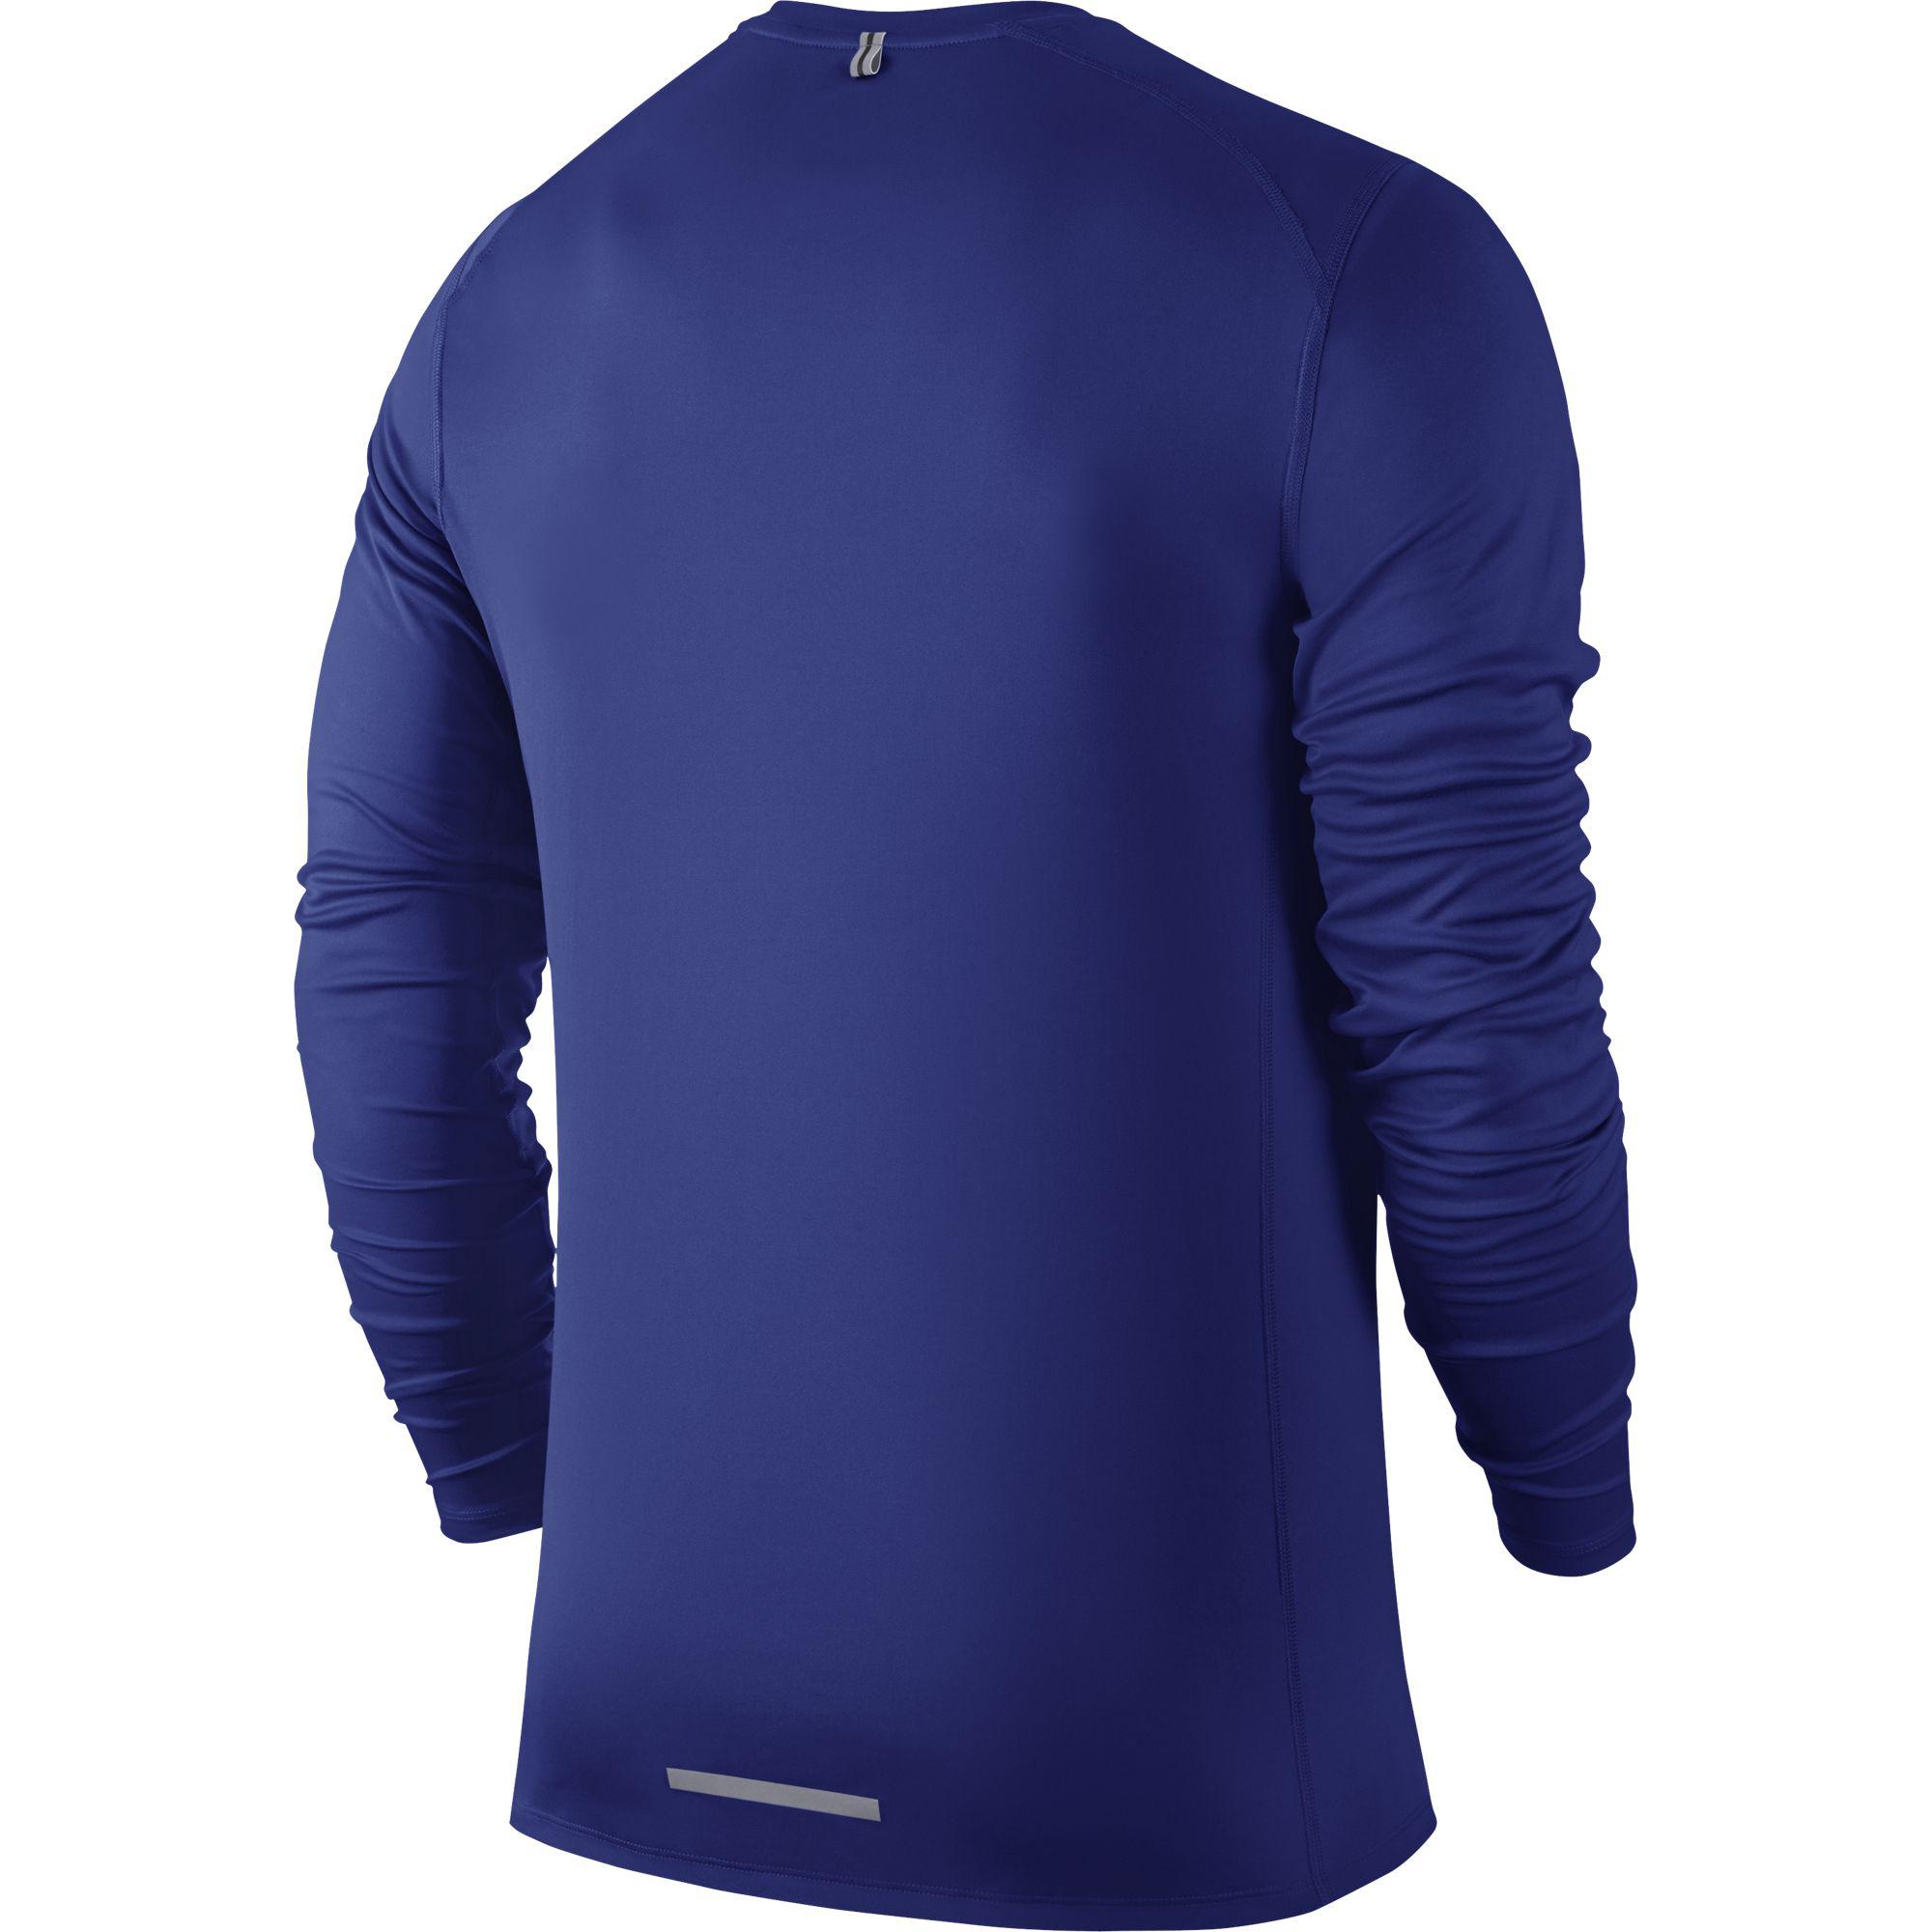 Nike Mens Dri-FIT Miler Long Sleeve Top - Deep Royal Blue - Tennisnuts.com